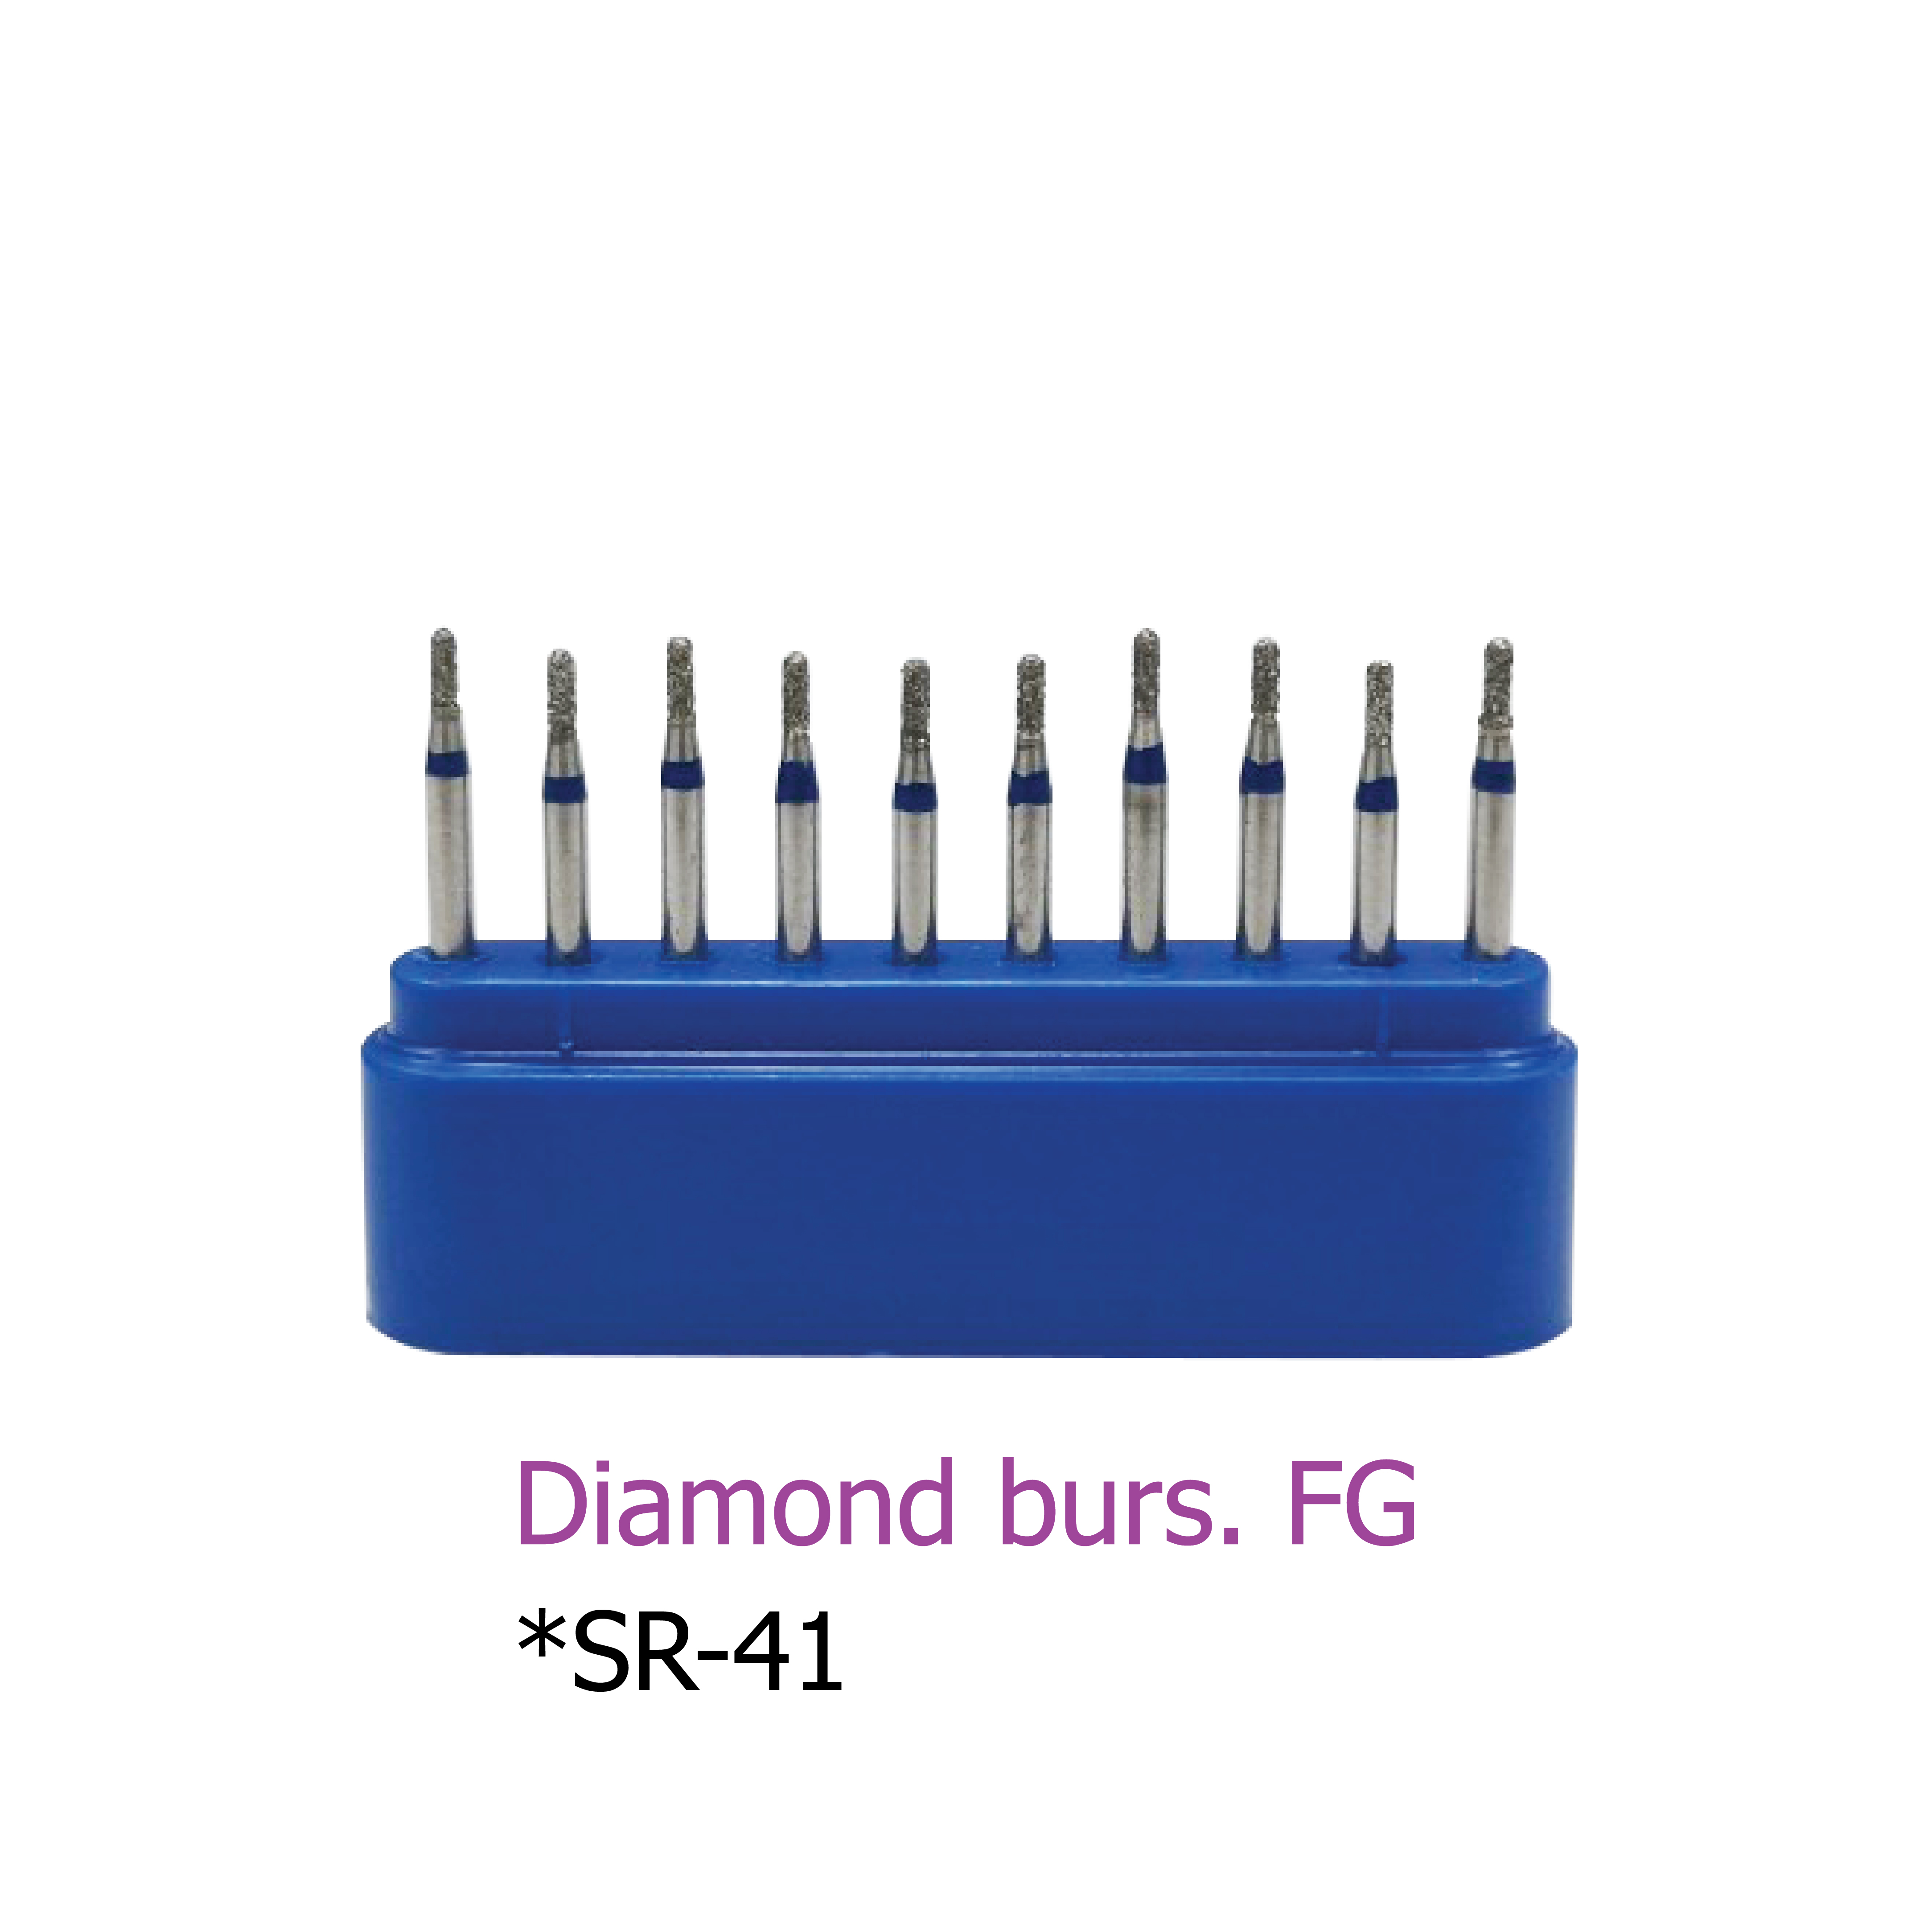 Diamond burs. FG *SR-41